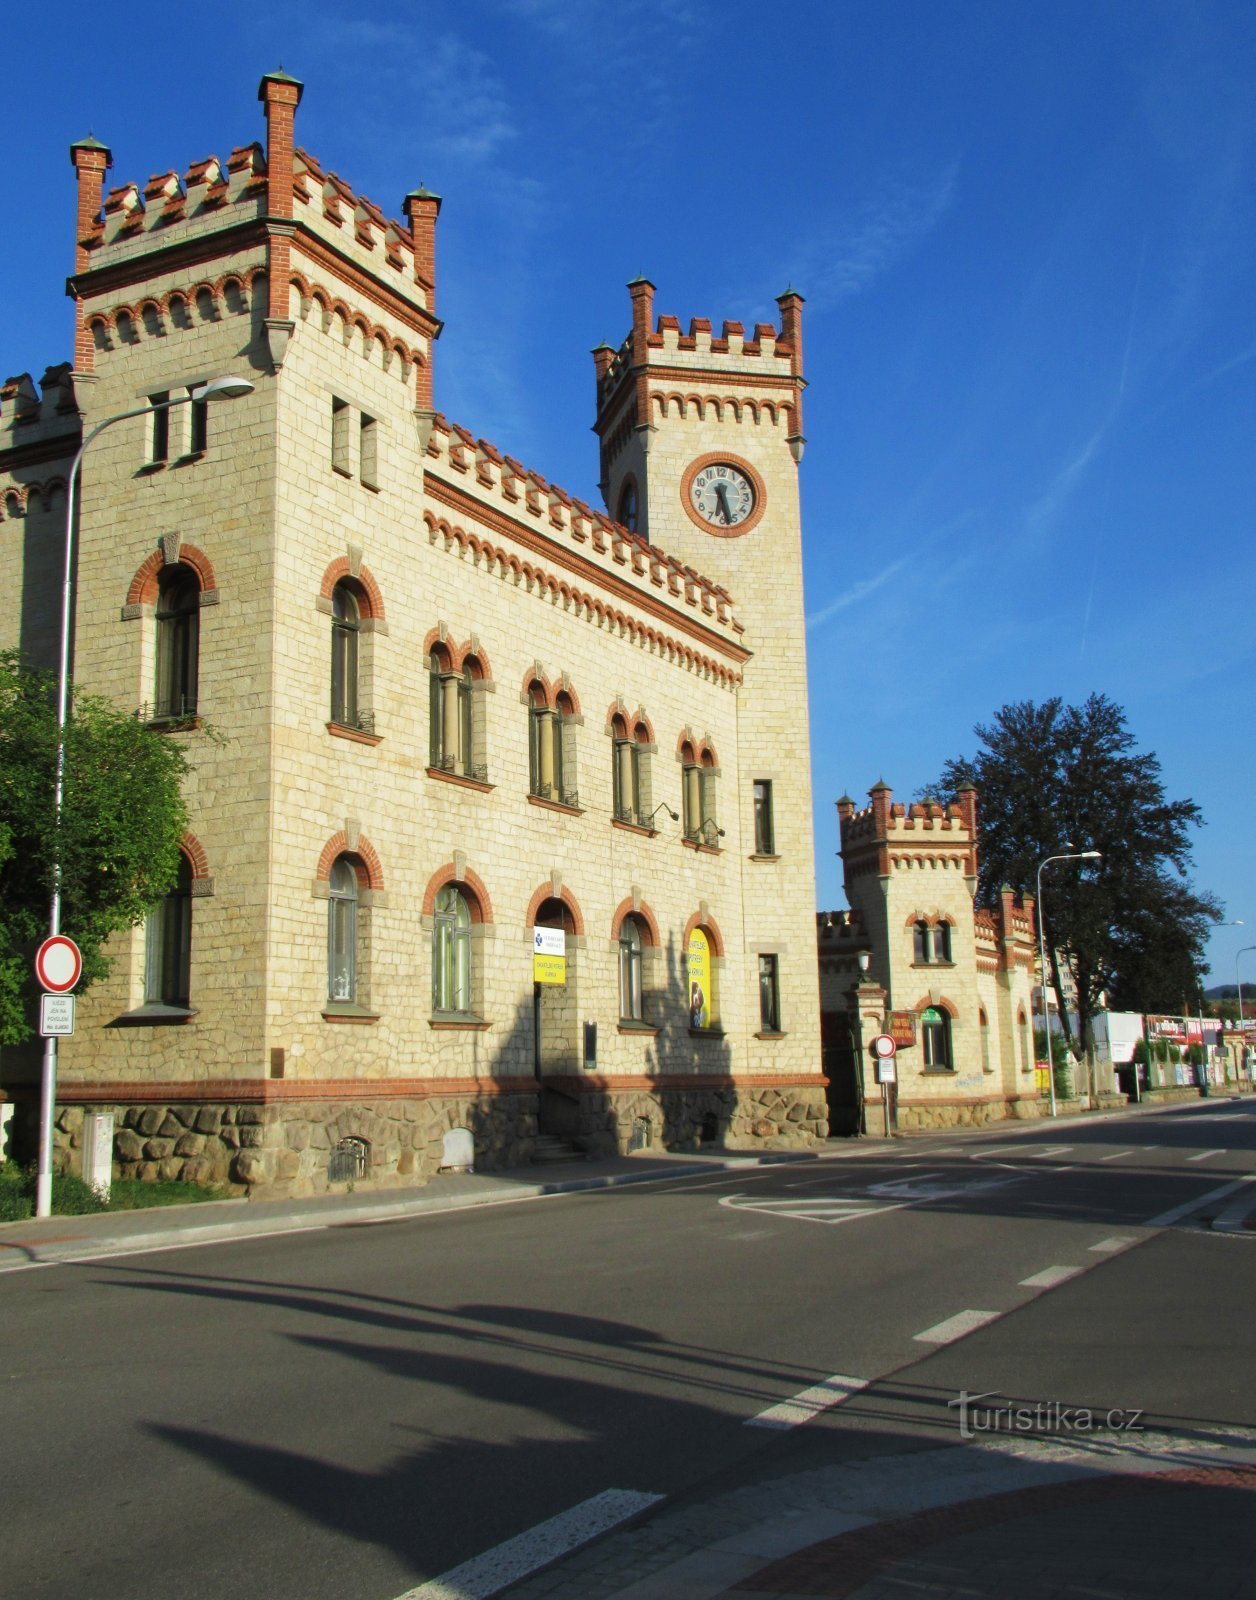 Ježek-företagets historiska byggnad i Blansko